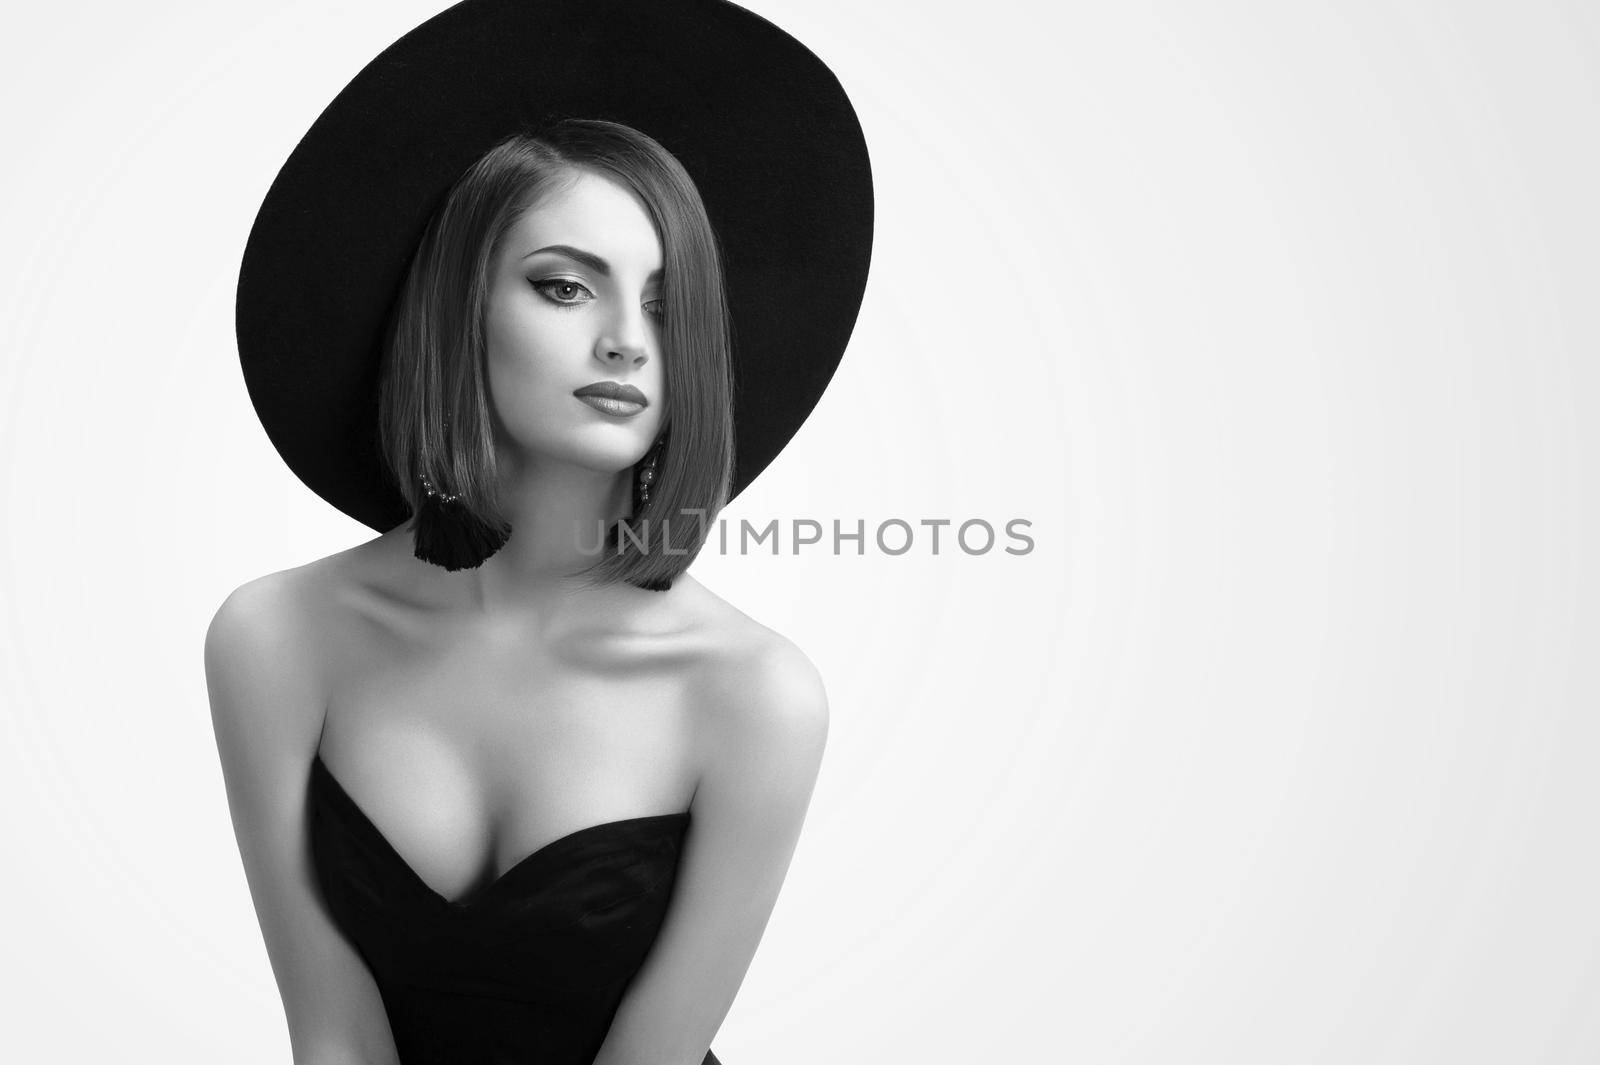 Monochrome beauty shots of an elegant woman in a hat by SerhiiBobyk